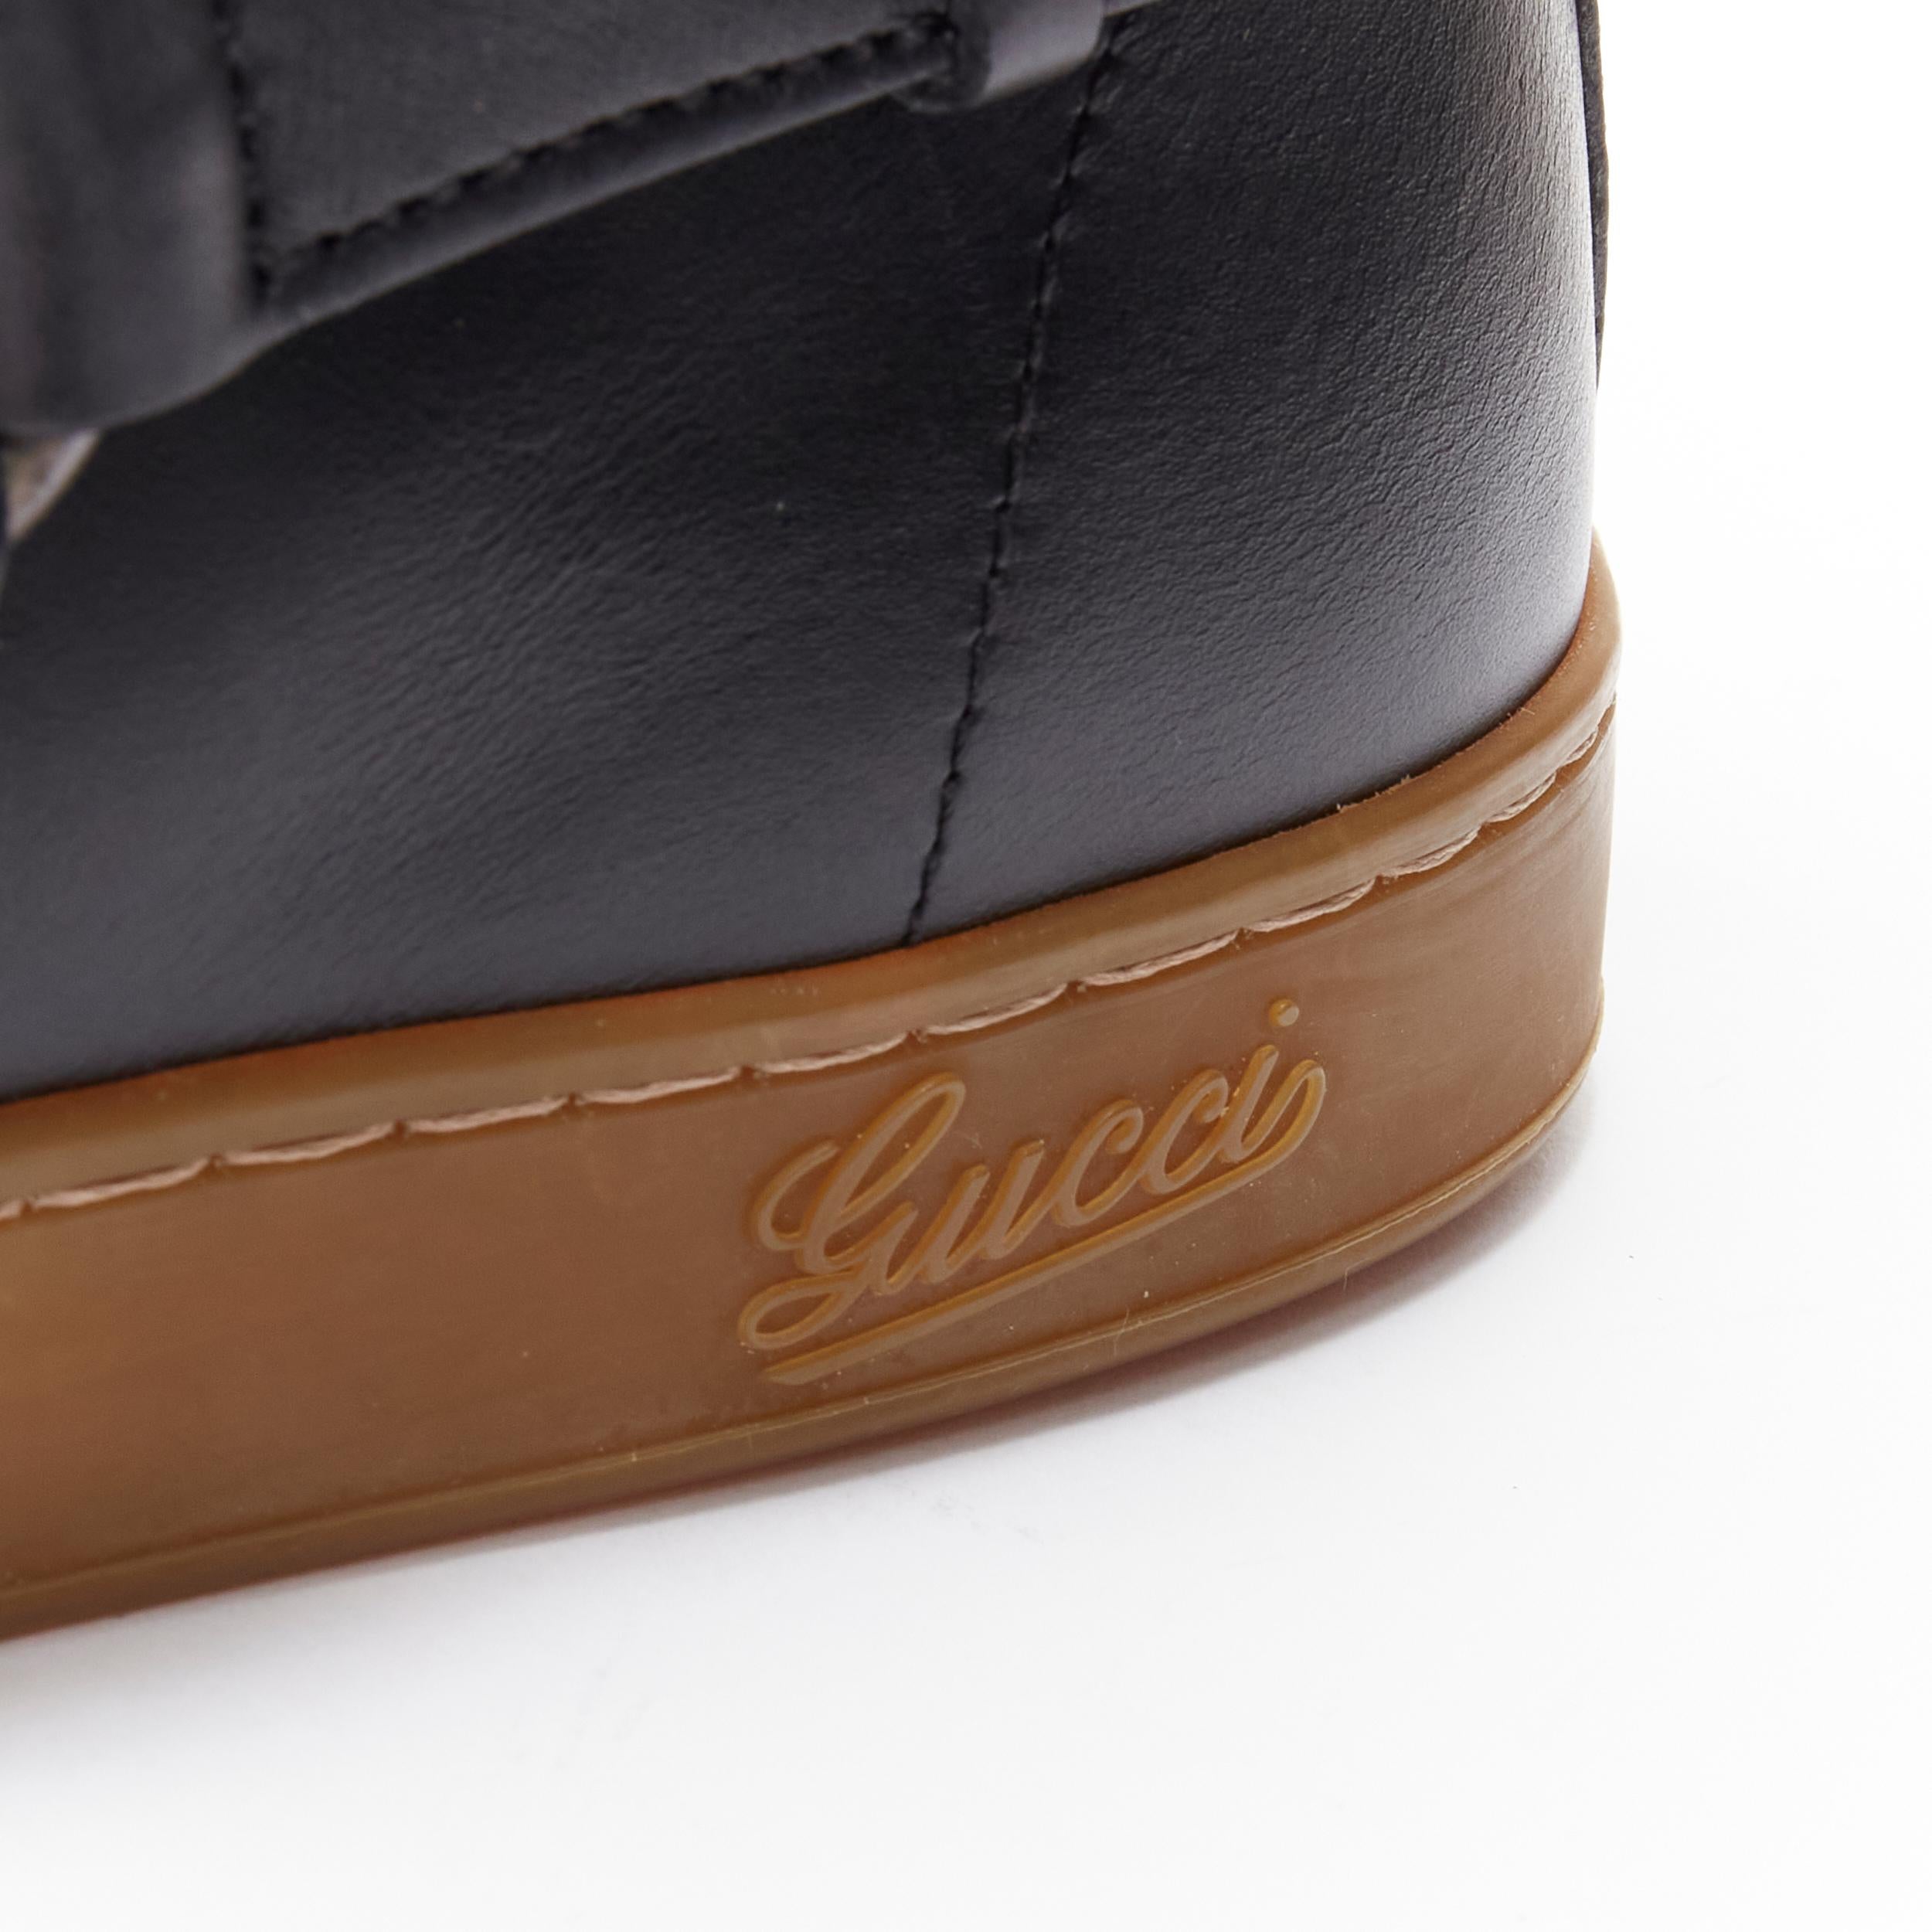 rare GUCCI Horsebit harness black leather gum sole high top sneaker UK8 EU42 3